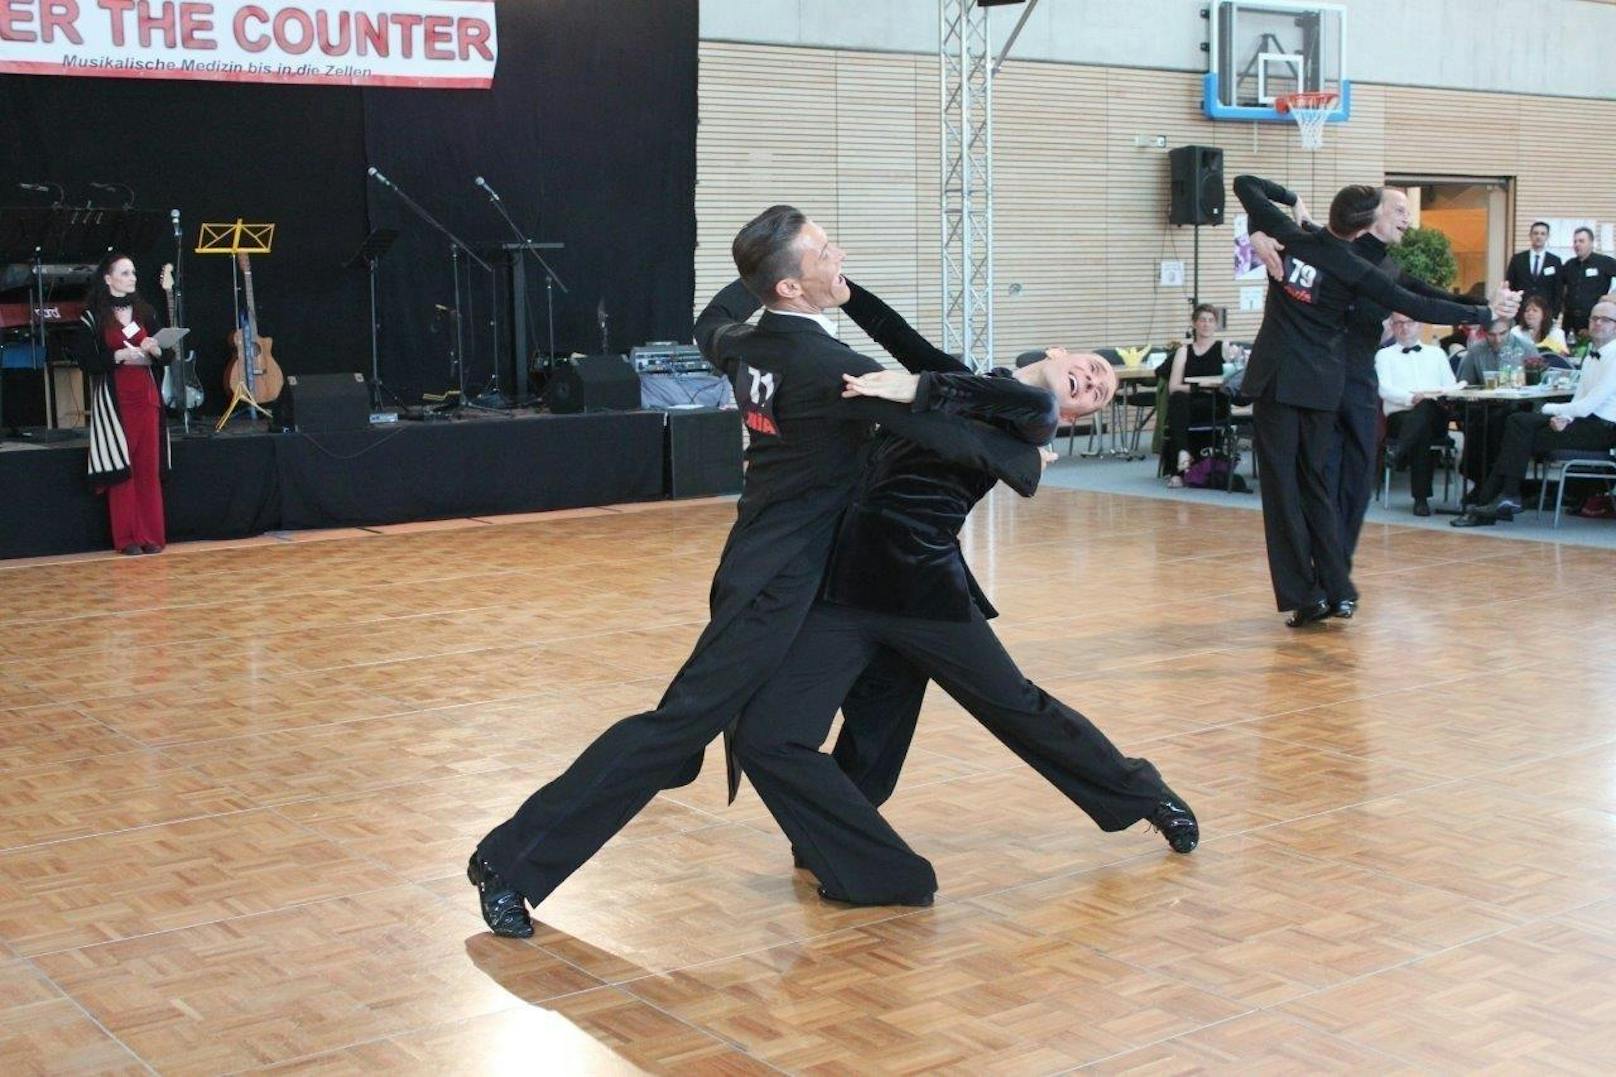 Thomas Marter und Stefan Lehner vom Tanzsportclub Wechselschritt Linz gewannen  die Deutsche Meisterschaften.